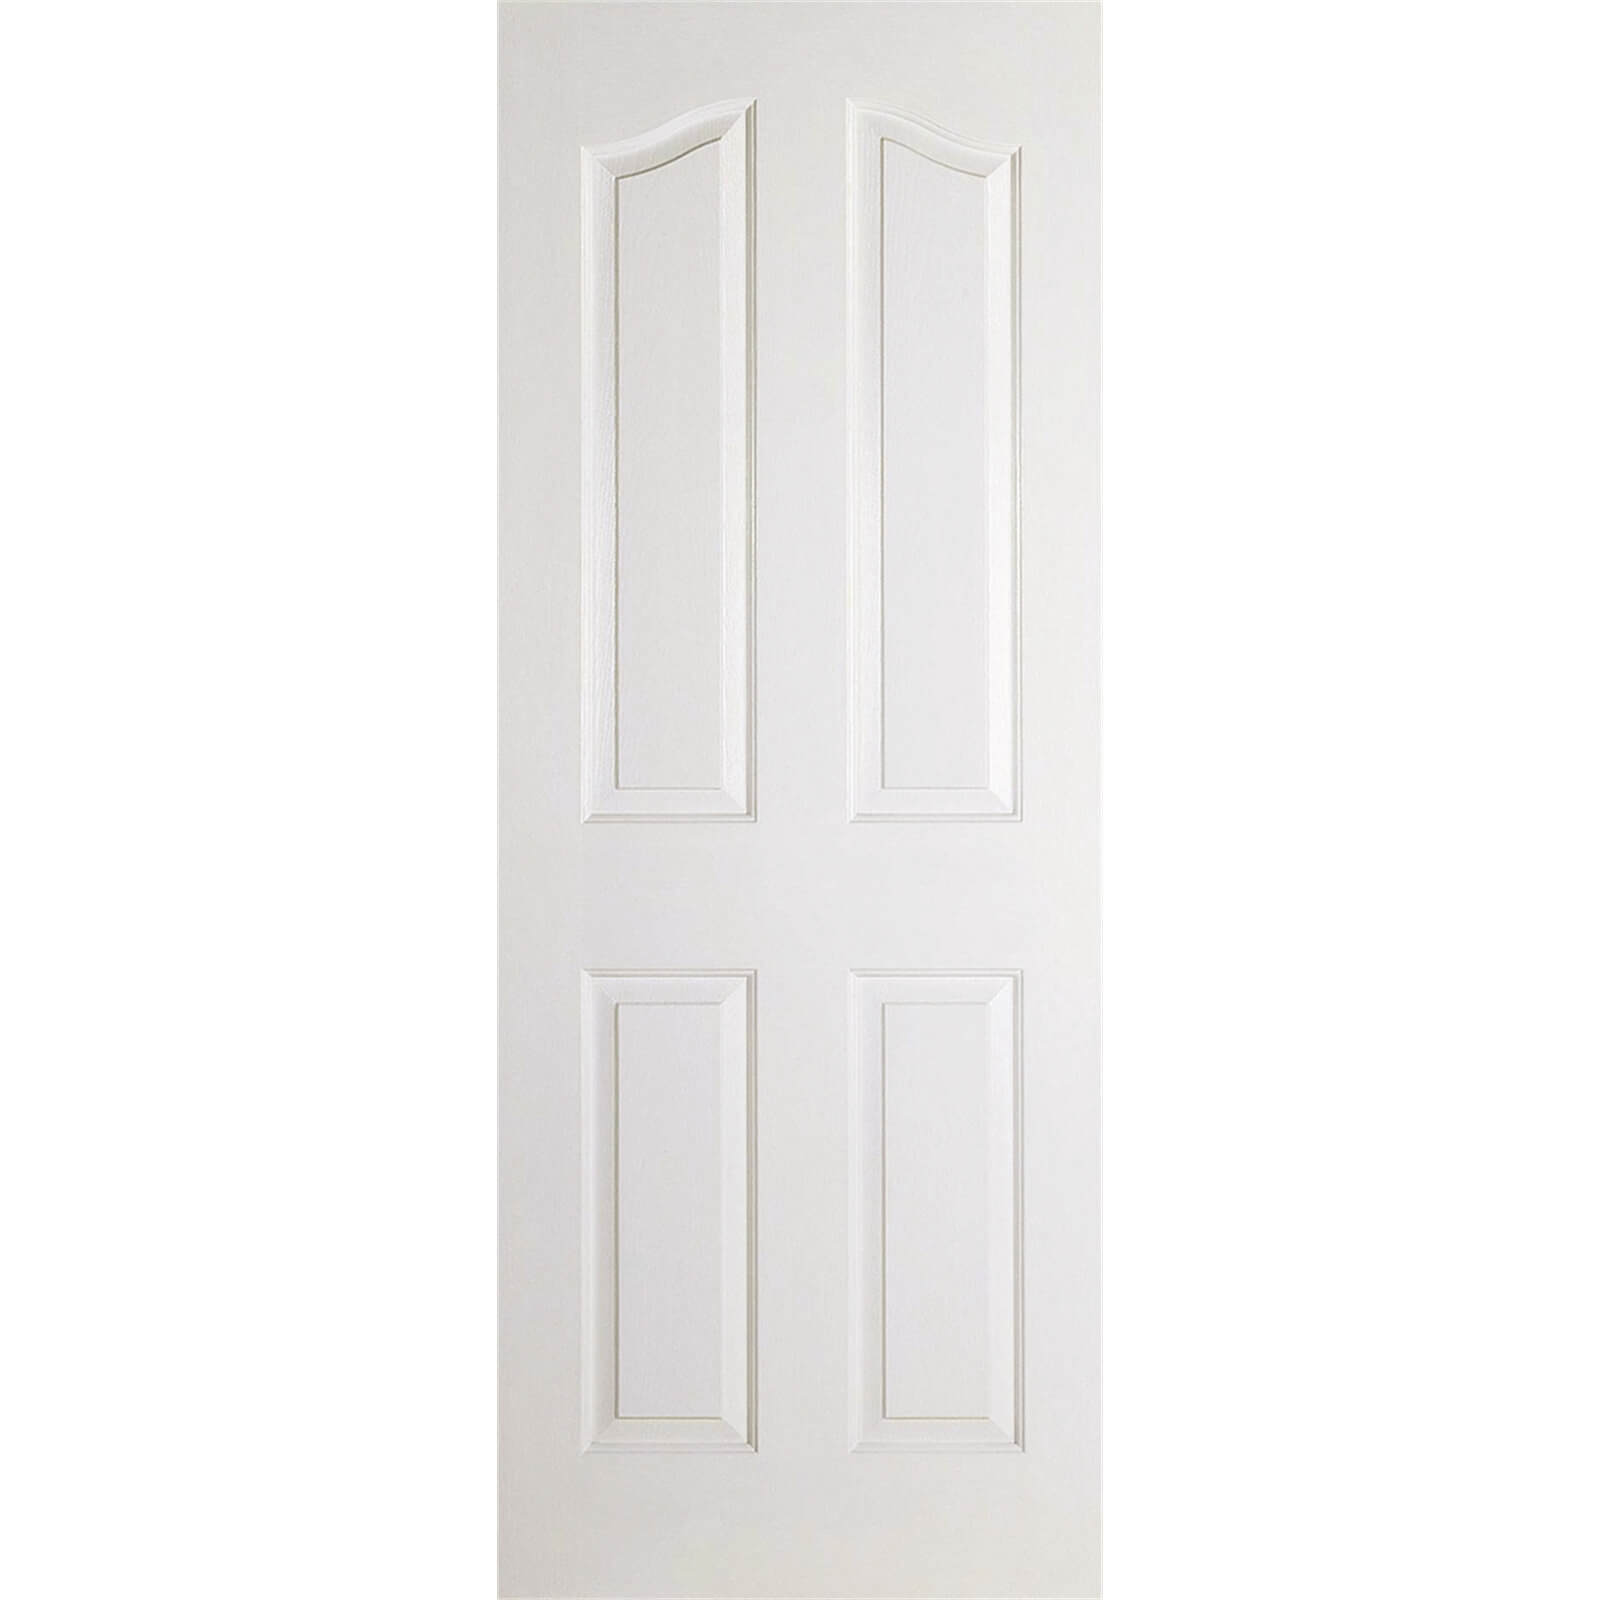 Mayfair Internal Primed White 4 Panel Door - 762 x 1981mm